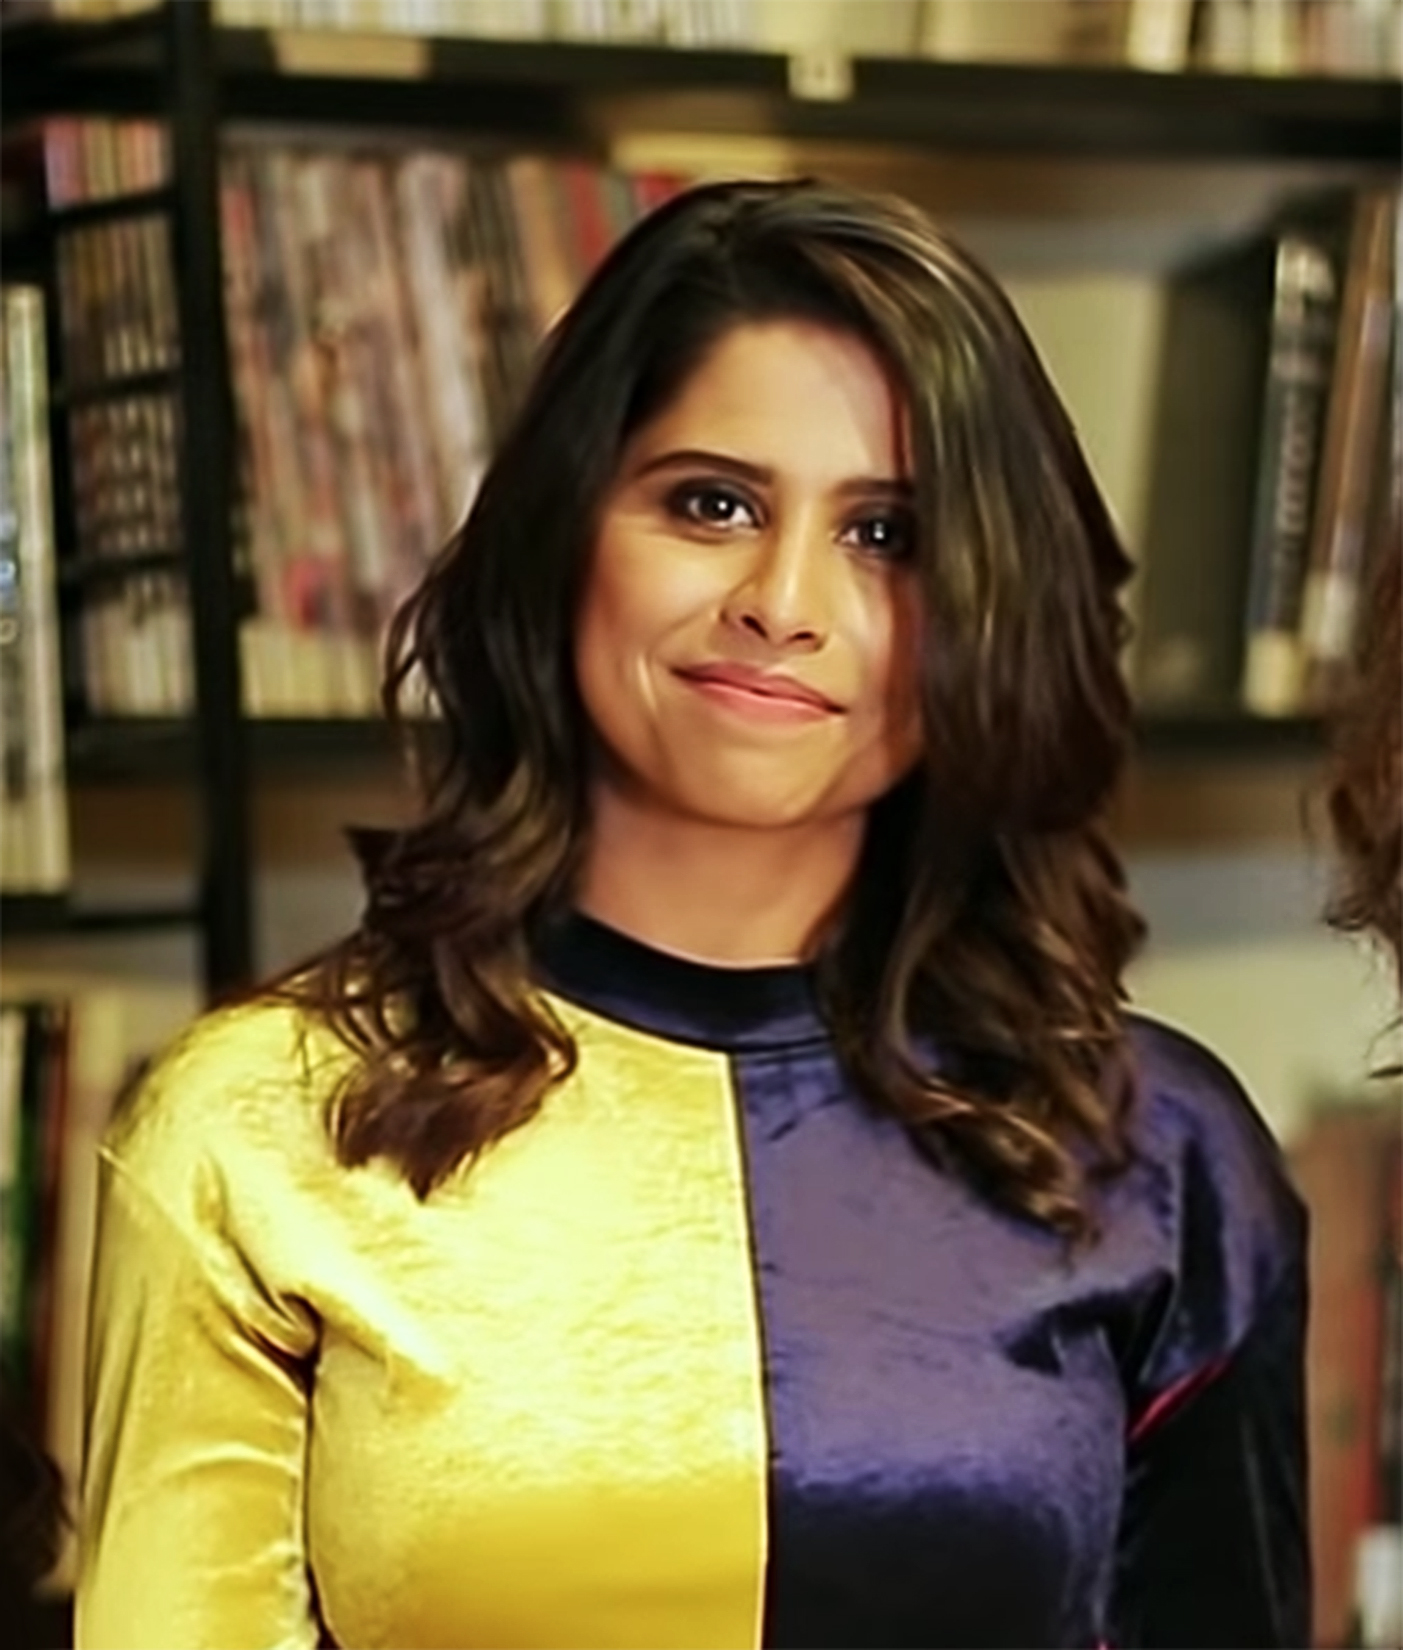 युएन वुमन्सच्या सशक्त भारतीय महिलांच्या व्हिडीयोमध्ये सई ताम्हणकर !